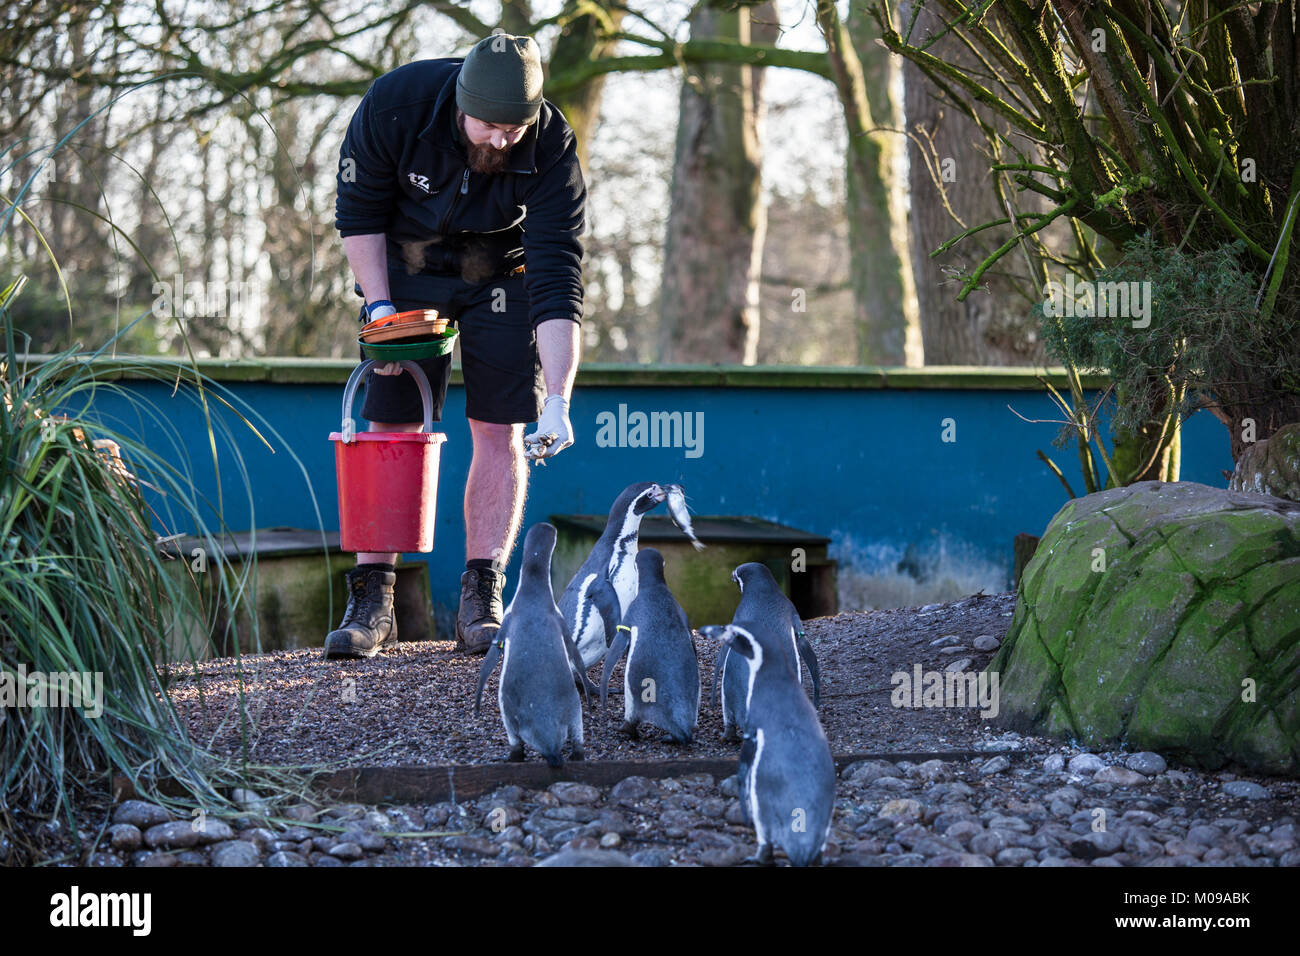 Le zoo de Twycross, Leicestershire, Angleterre, Royaume-Uni. 19 Jan 2018. Les pingouins de Humboldt dans leur enceinte être nourris par leur gardien de zoo. Les pingouins de Humboldt sont indigènes aux régions côtières du Chili et du Pérou et sont classés comme espèce vulnérable dans la nature par l'Union internationale pour la conservation de la Nature. Le zoo de Twycross est marquant la Journée de sensibilisation aux pingouins le 20 janvier 2018 avec un week-end toute une série d'activités dans 20 et 21 janvier pour faire connaître de penguin et aires marines de conservation. Credit : Mehul Patel/Alamy Live News Banque D'Images